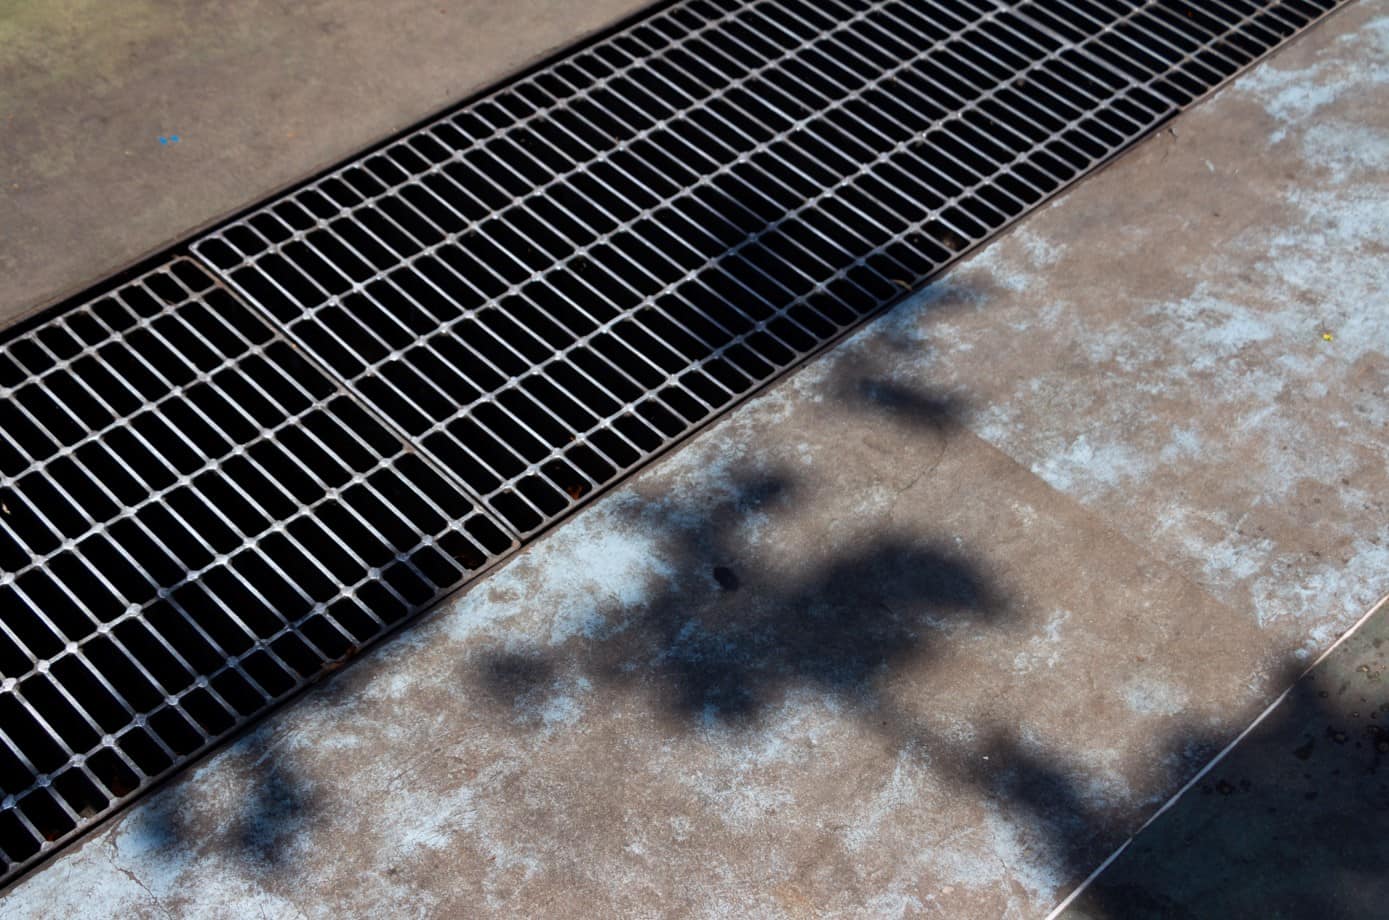 Advantages of metal grid flooring